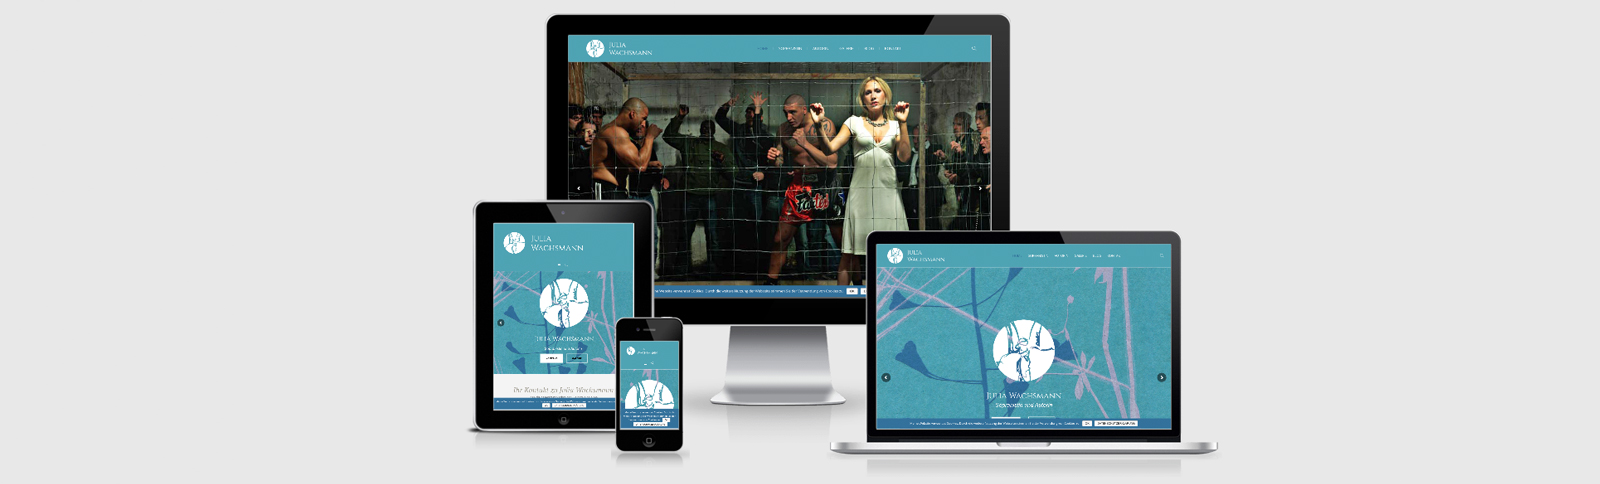 Erstellung der Homepage für die Hamburger Kulturschaffende Julia Wachsmann durch Kähler & Kähler.